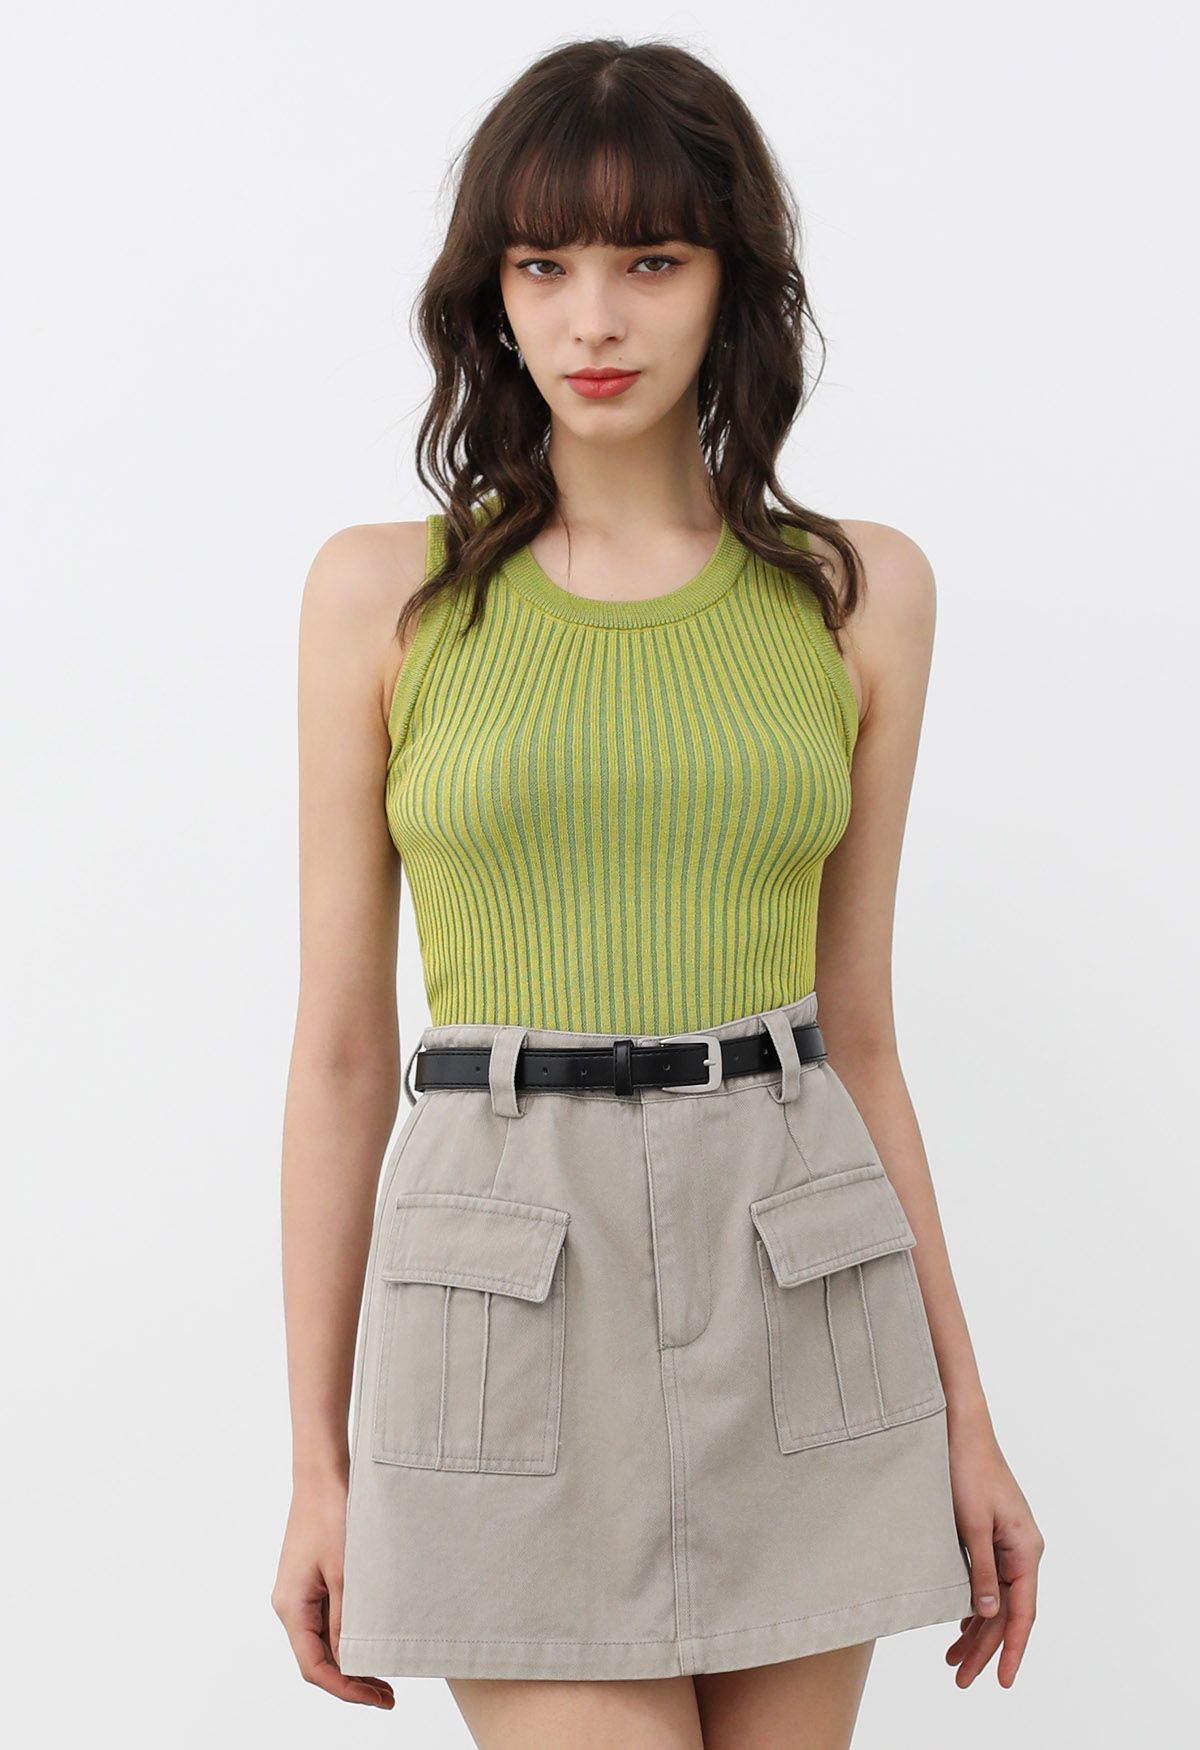 Flap Pocket Denim Mini Skirt with Belt in Linen